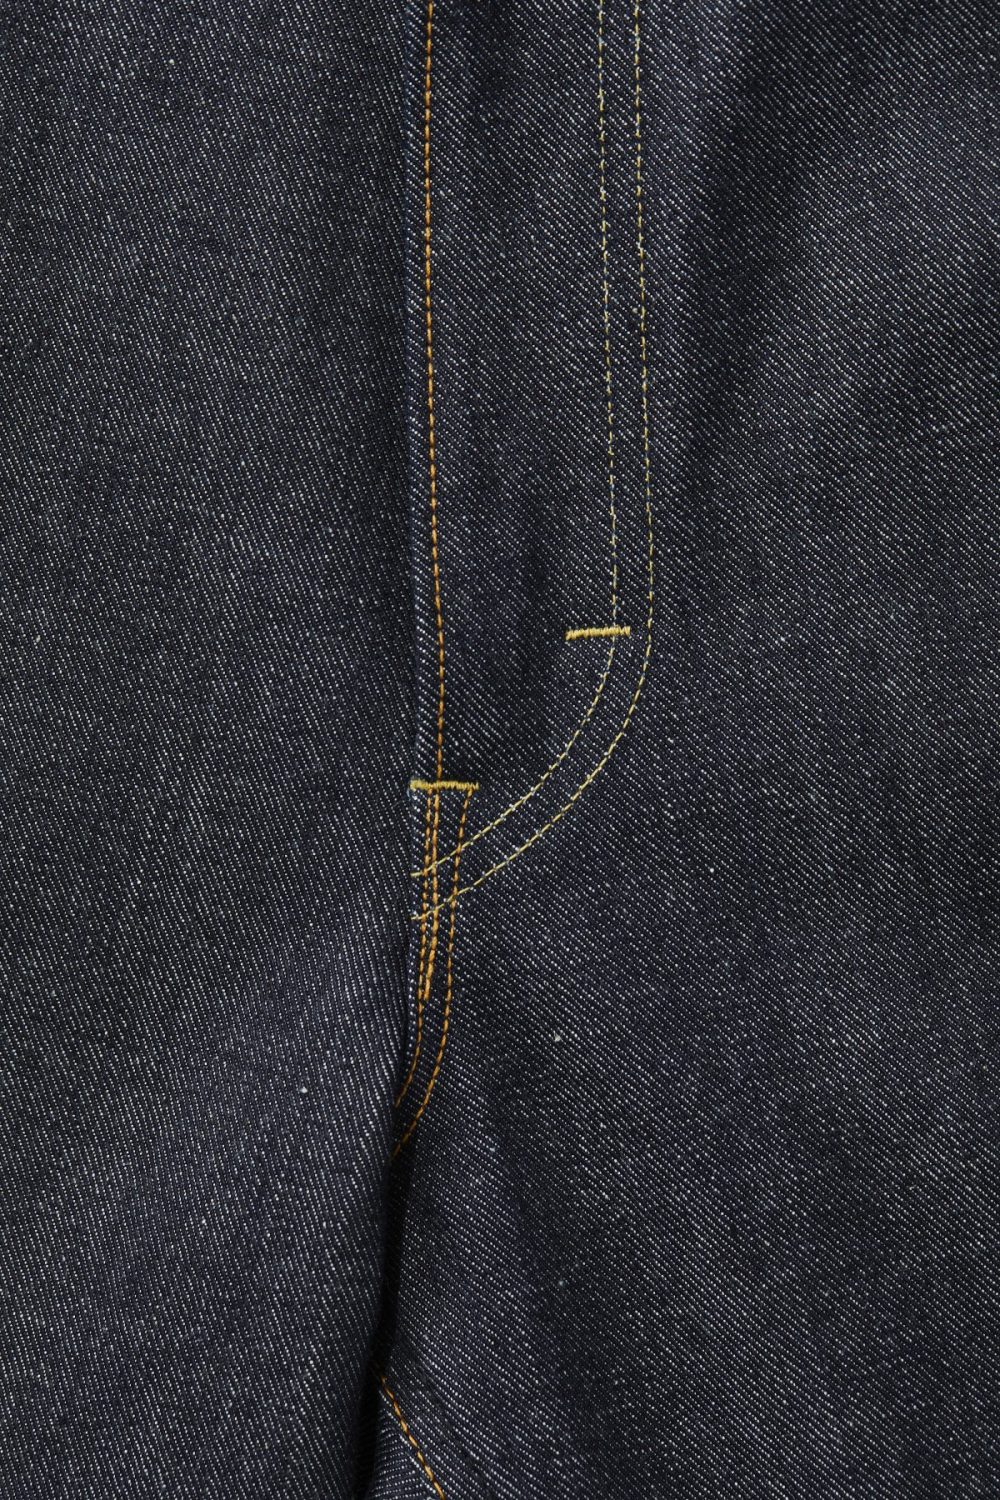 2色使いの縫製糸、ジッパーはピンロックのGRIPPER ZIPPER、股リベットがなくなり閂止めに